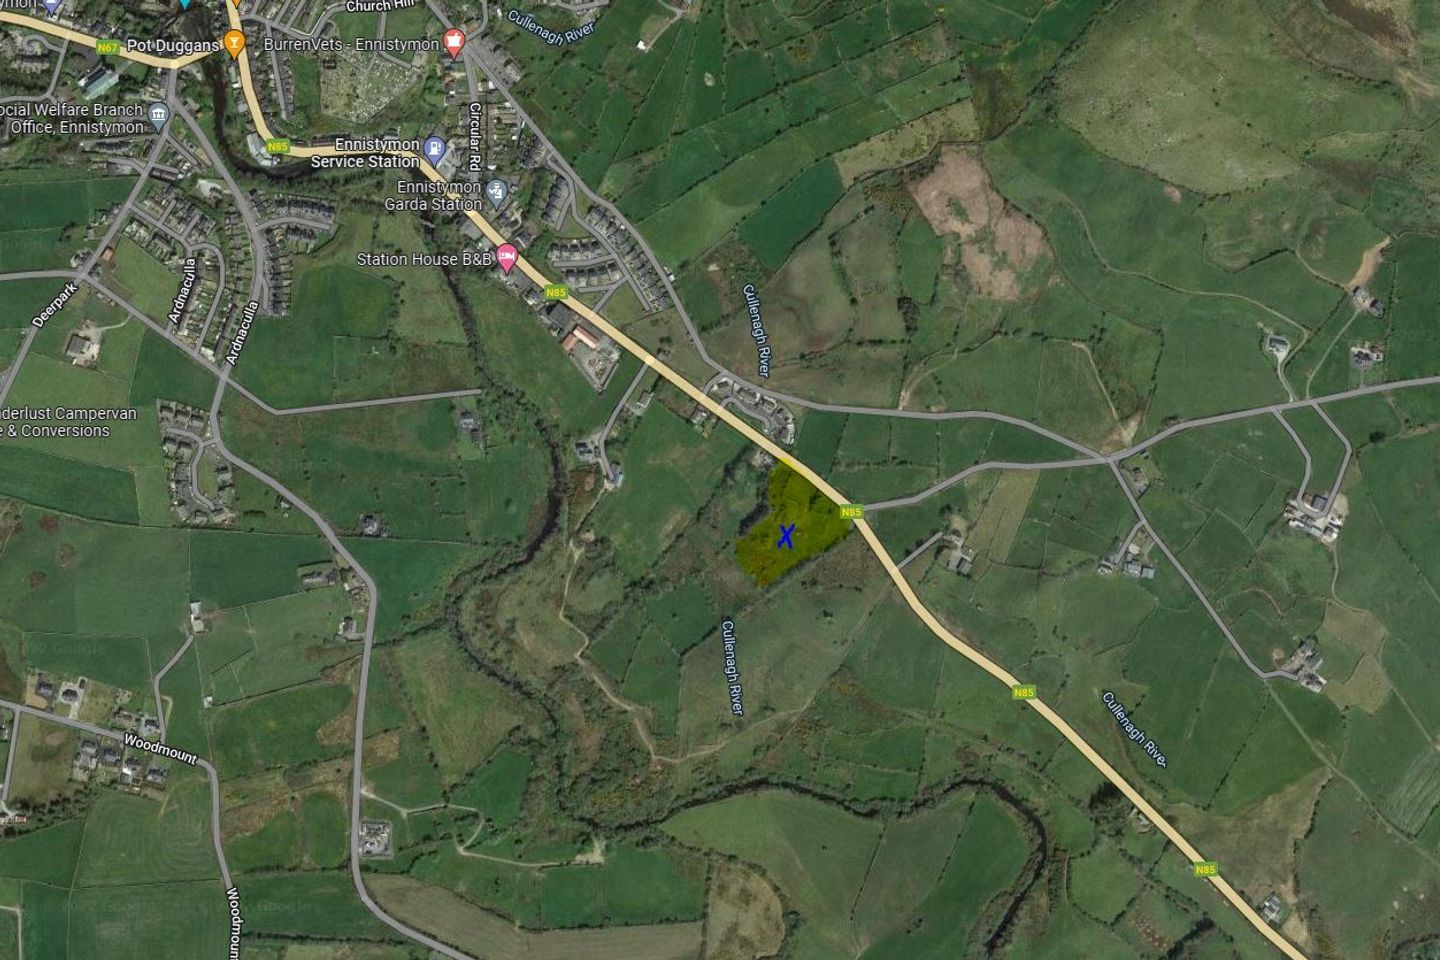 4 Acres CE6606 & CE15362f, 3.66 Acres Land/Site, Ennistymon, Co. Clare